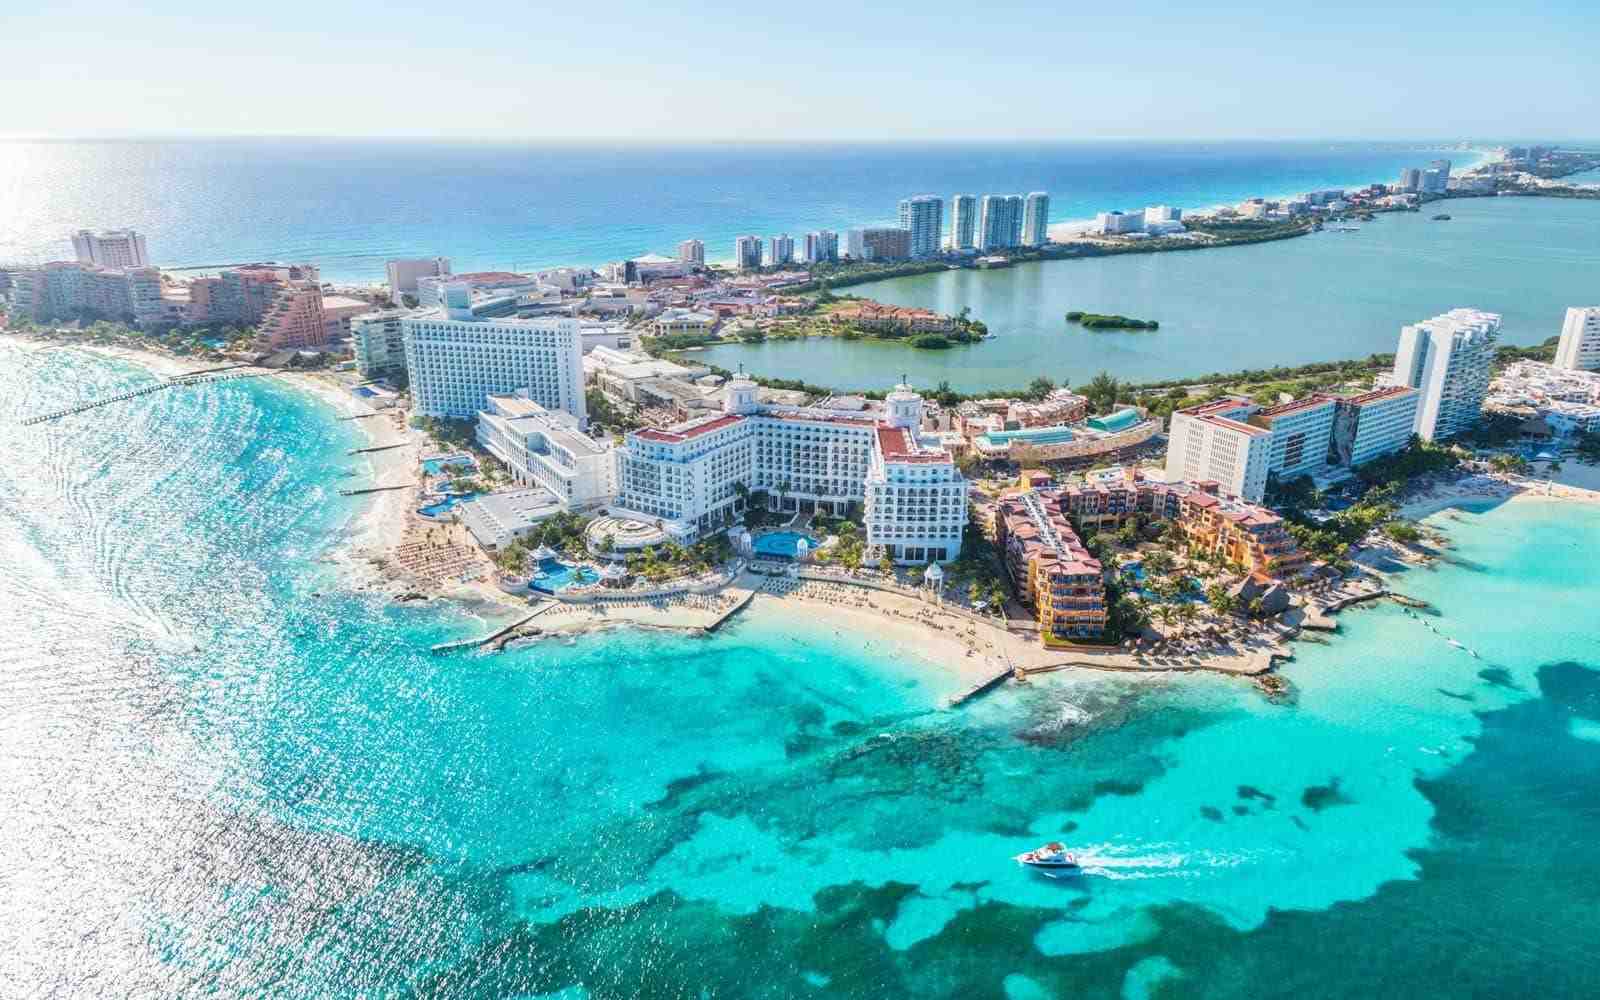 ¿Qué es lo más barato que encontrare un vuelo a Cancun?